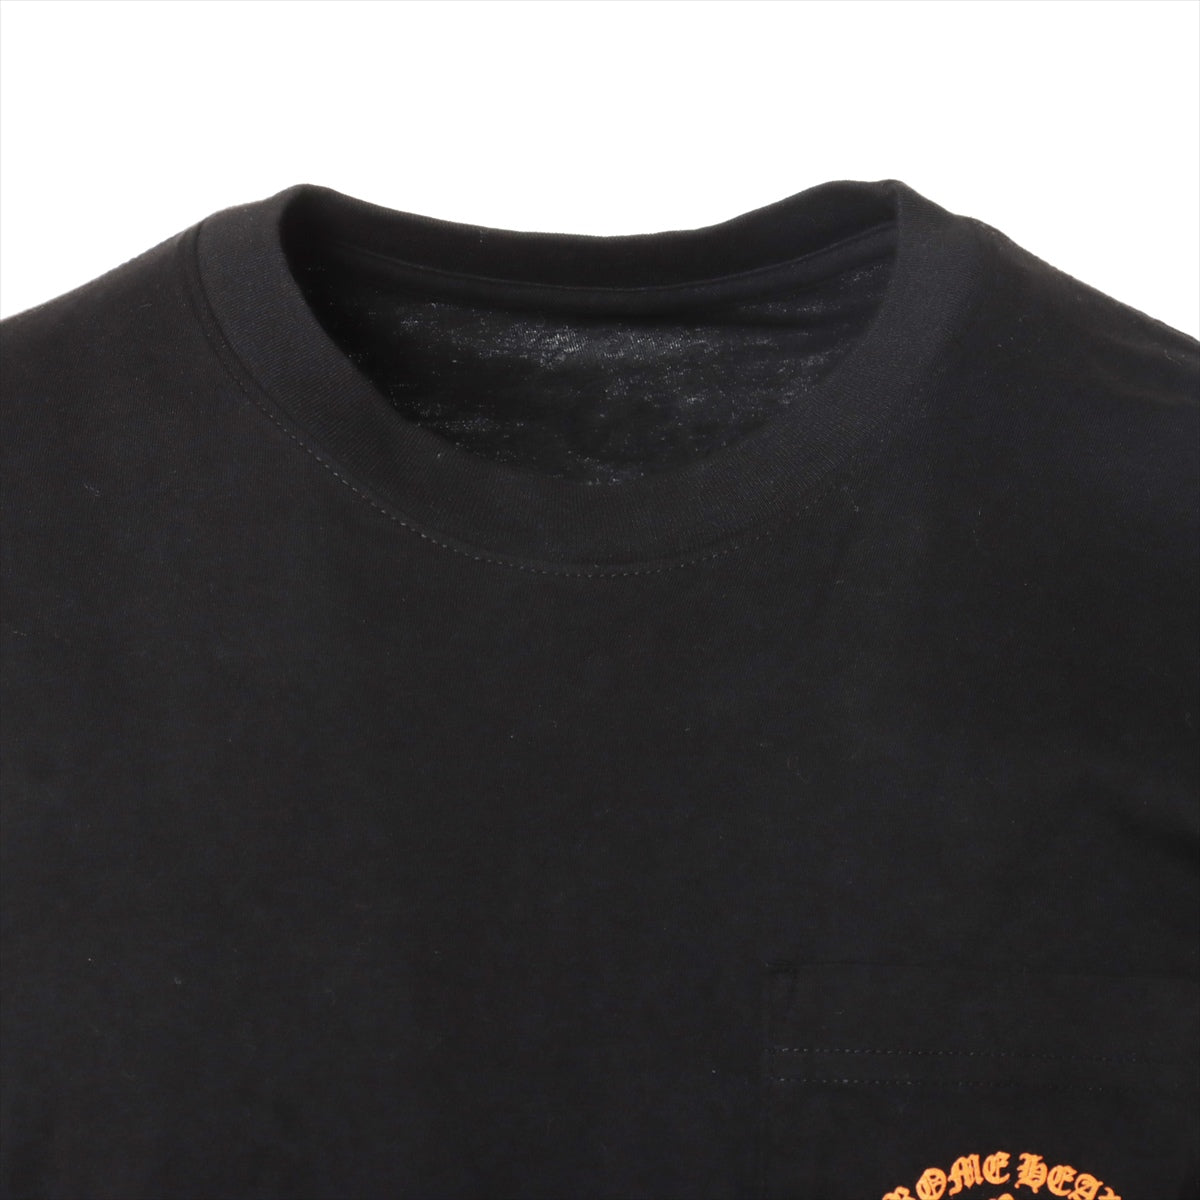 クロムハーツ セメタリークロス ロングTシャツ コットン サイズM ブラック×オレンジ ハリウッド